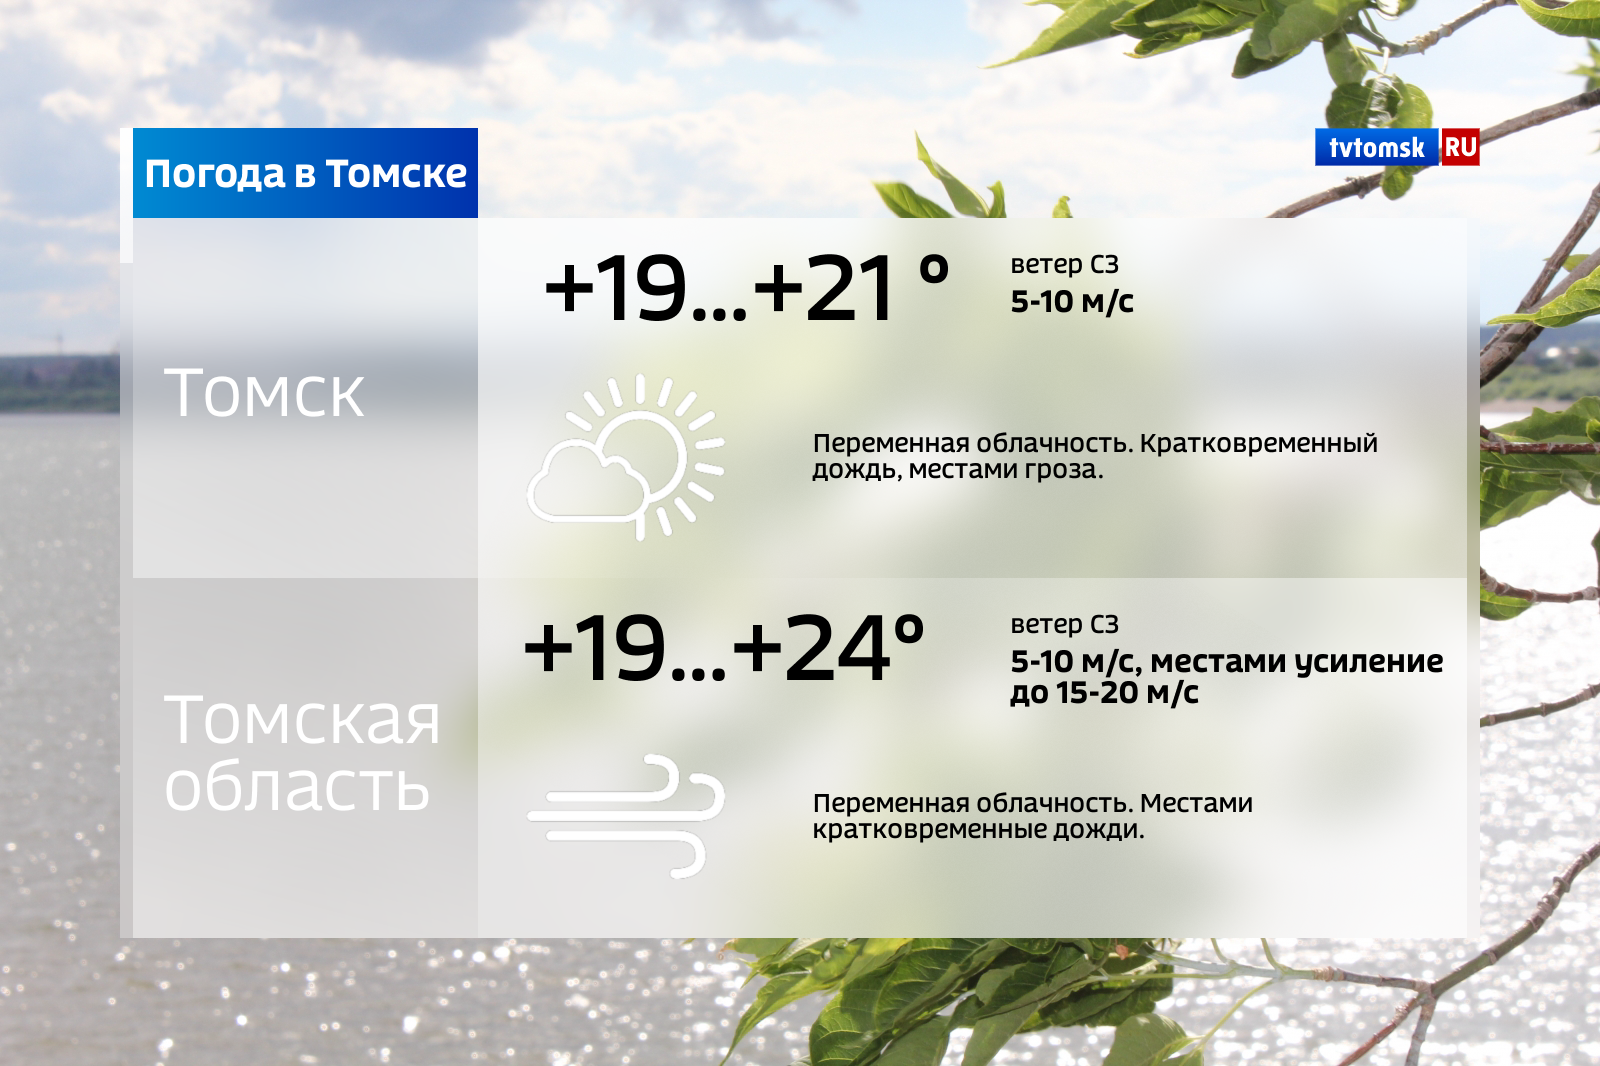 Погода в томске на 14. Погода в Томске. Прогноз погоды в Томске. Погода в Томске сегодня. Погода в Томске сейчас.